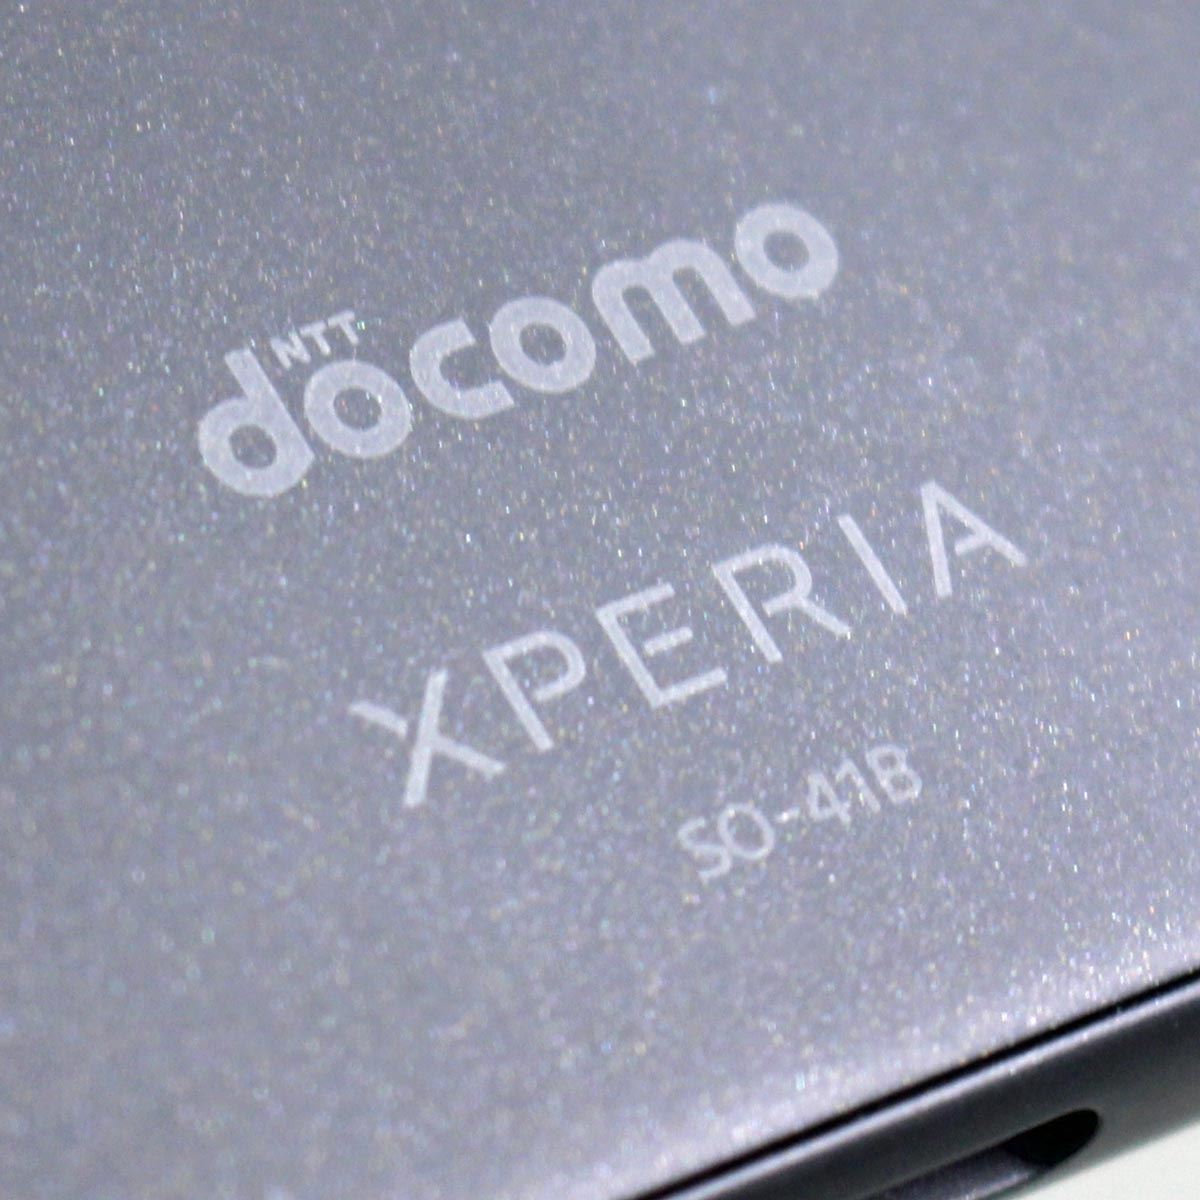 新商品通販 SONY Xperia ドコモ ブラック SO-41B II Ace スマートフォン本体